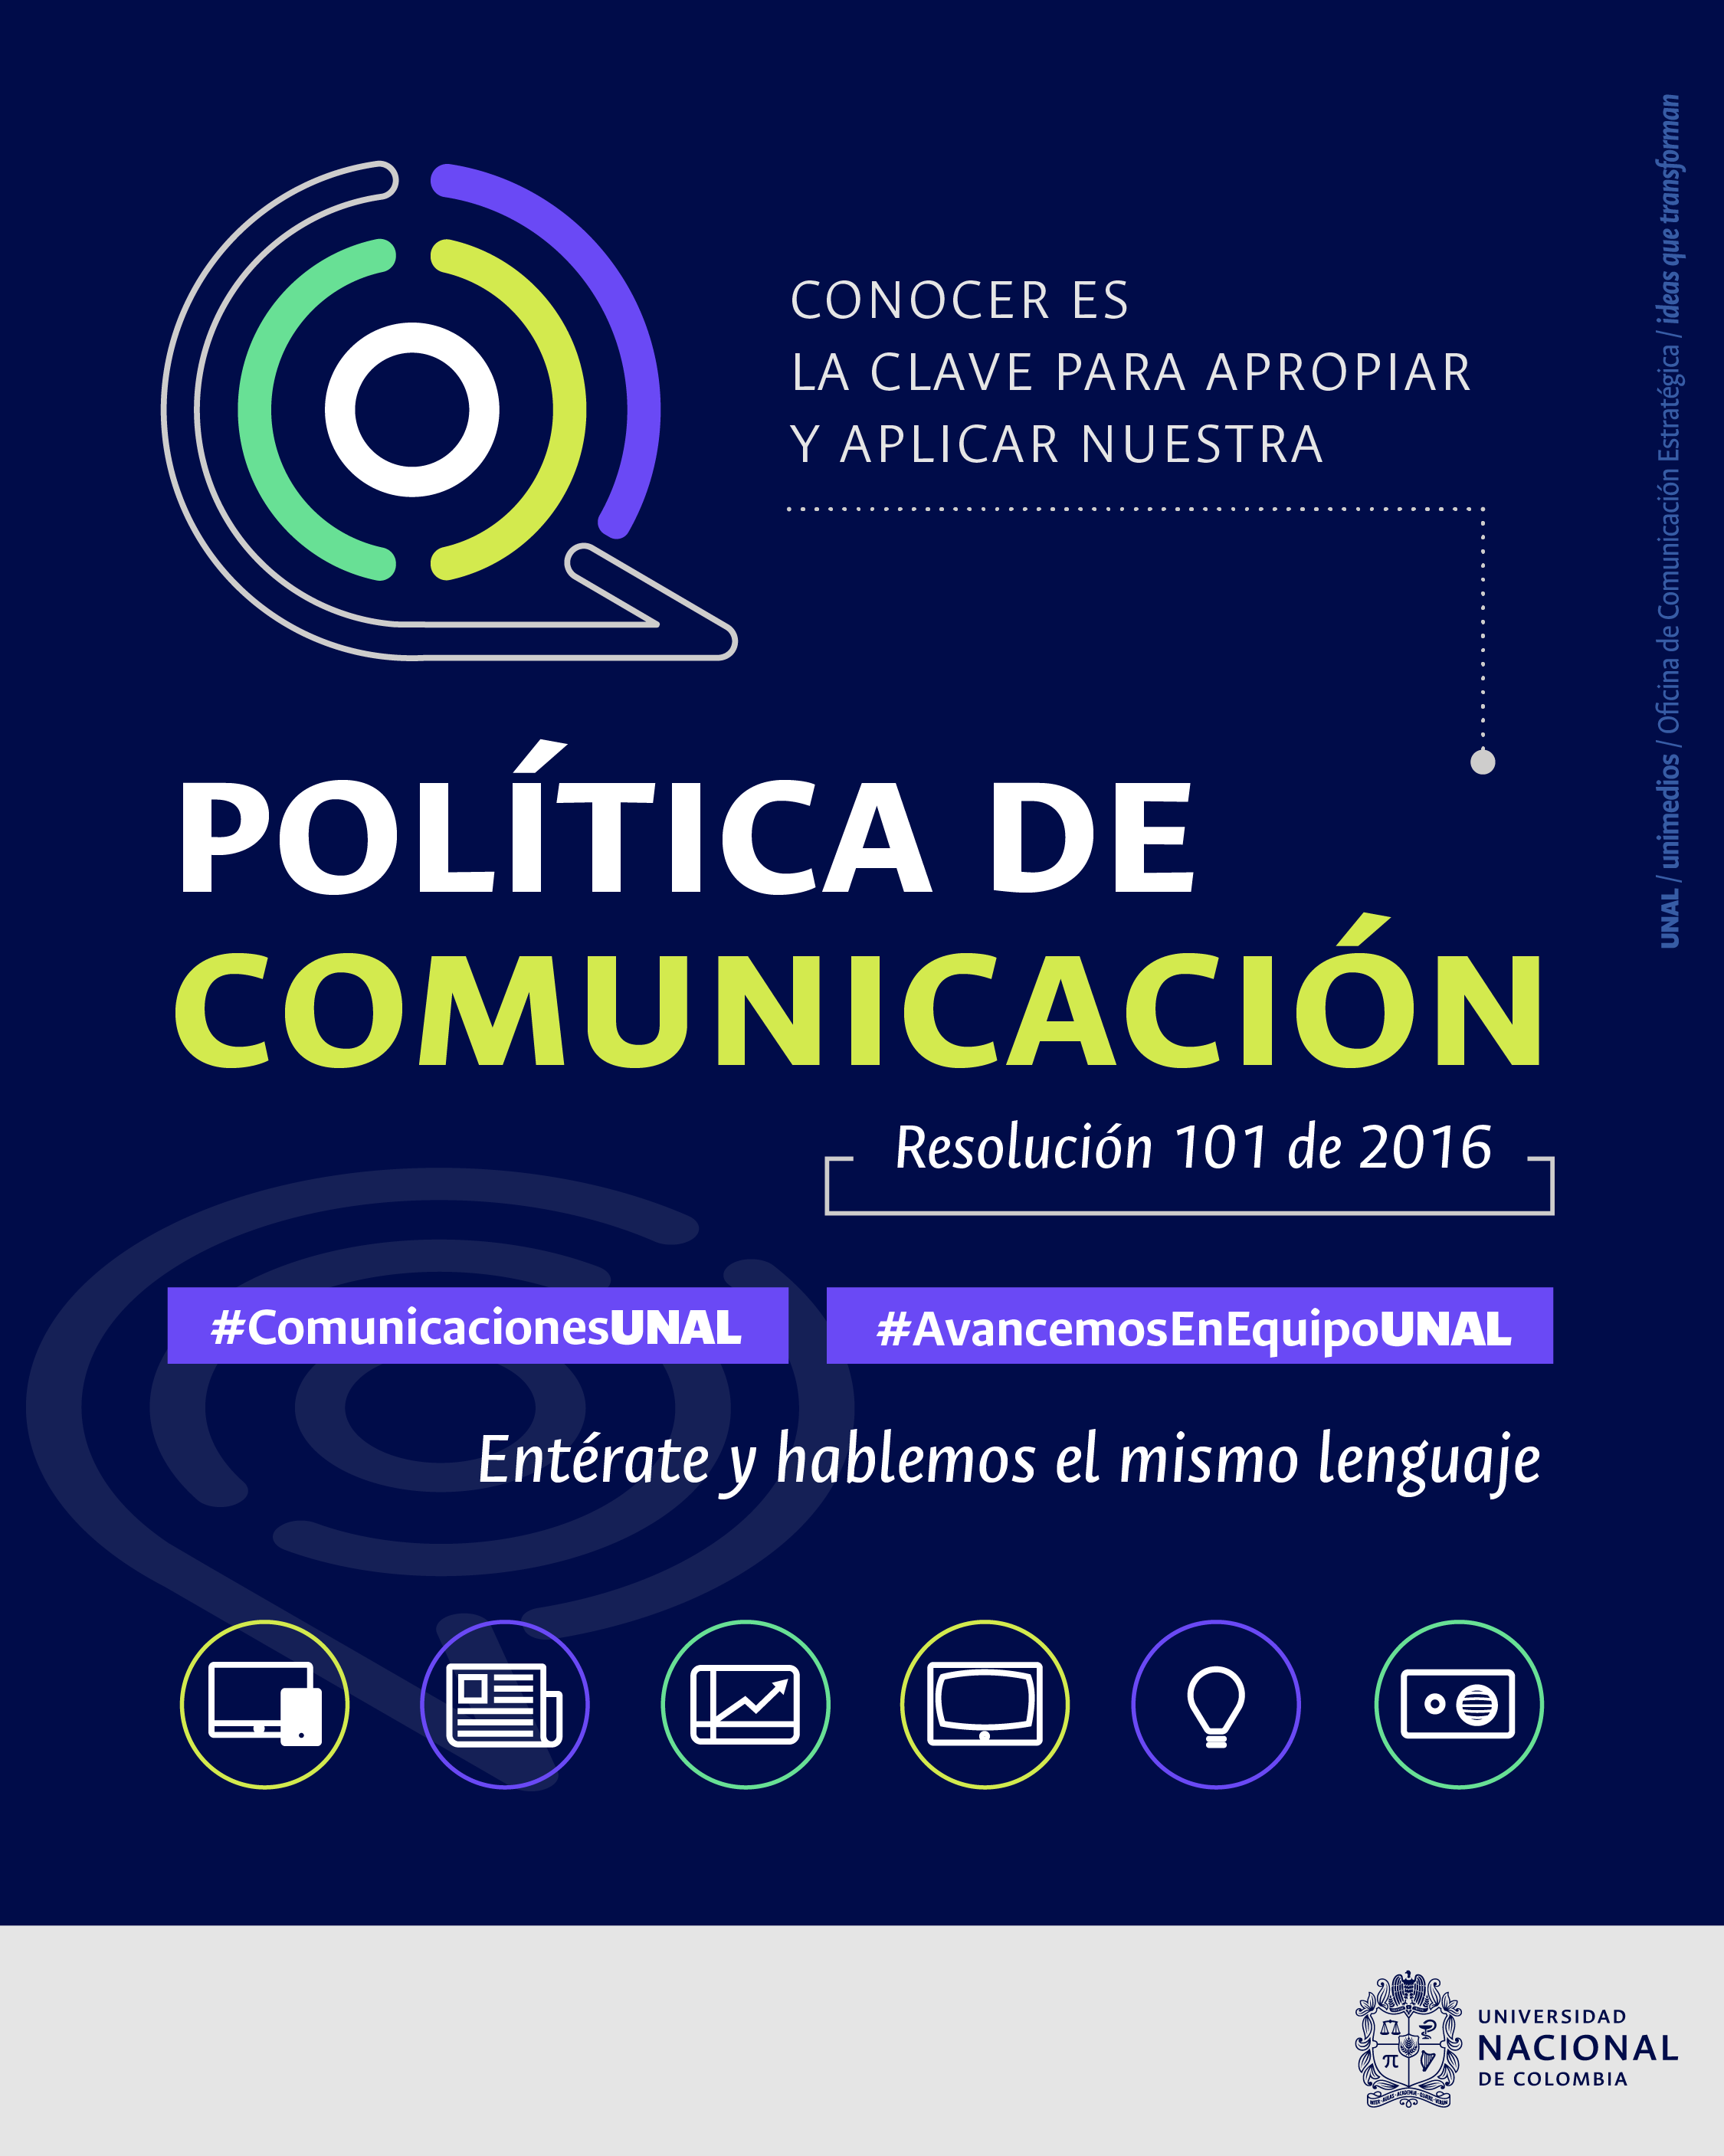 Politica de Comunicaciones UNAL